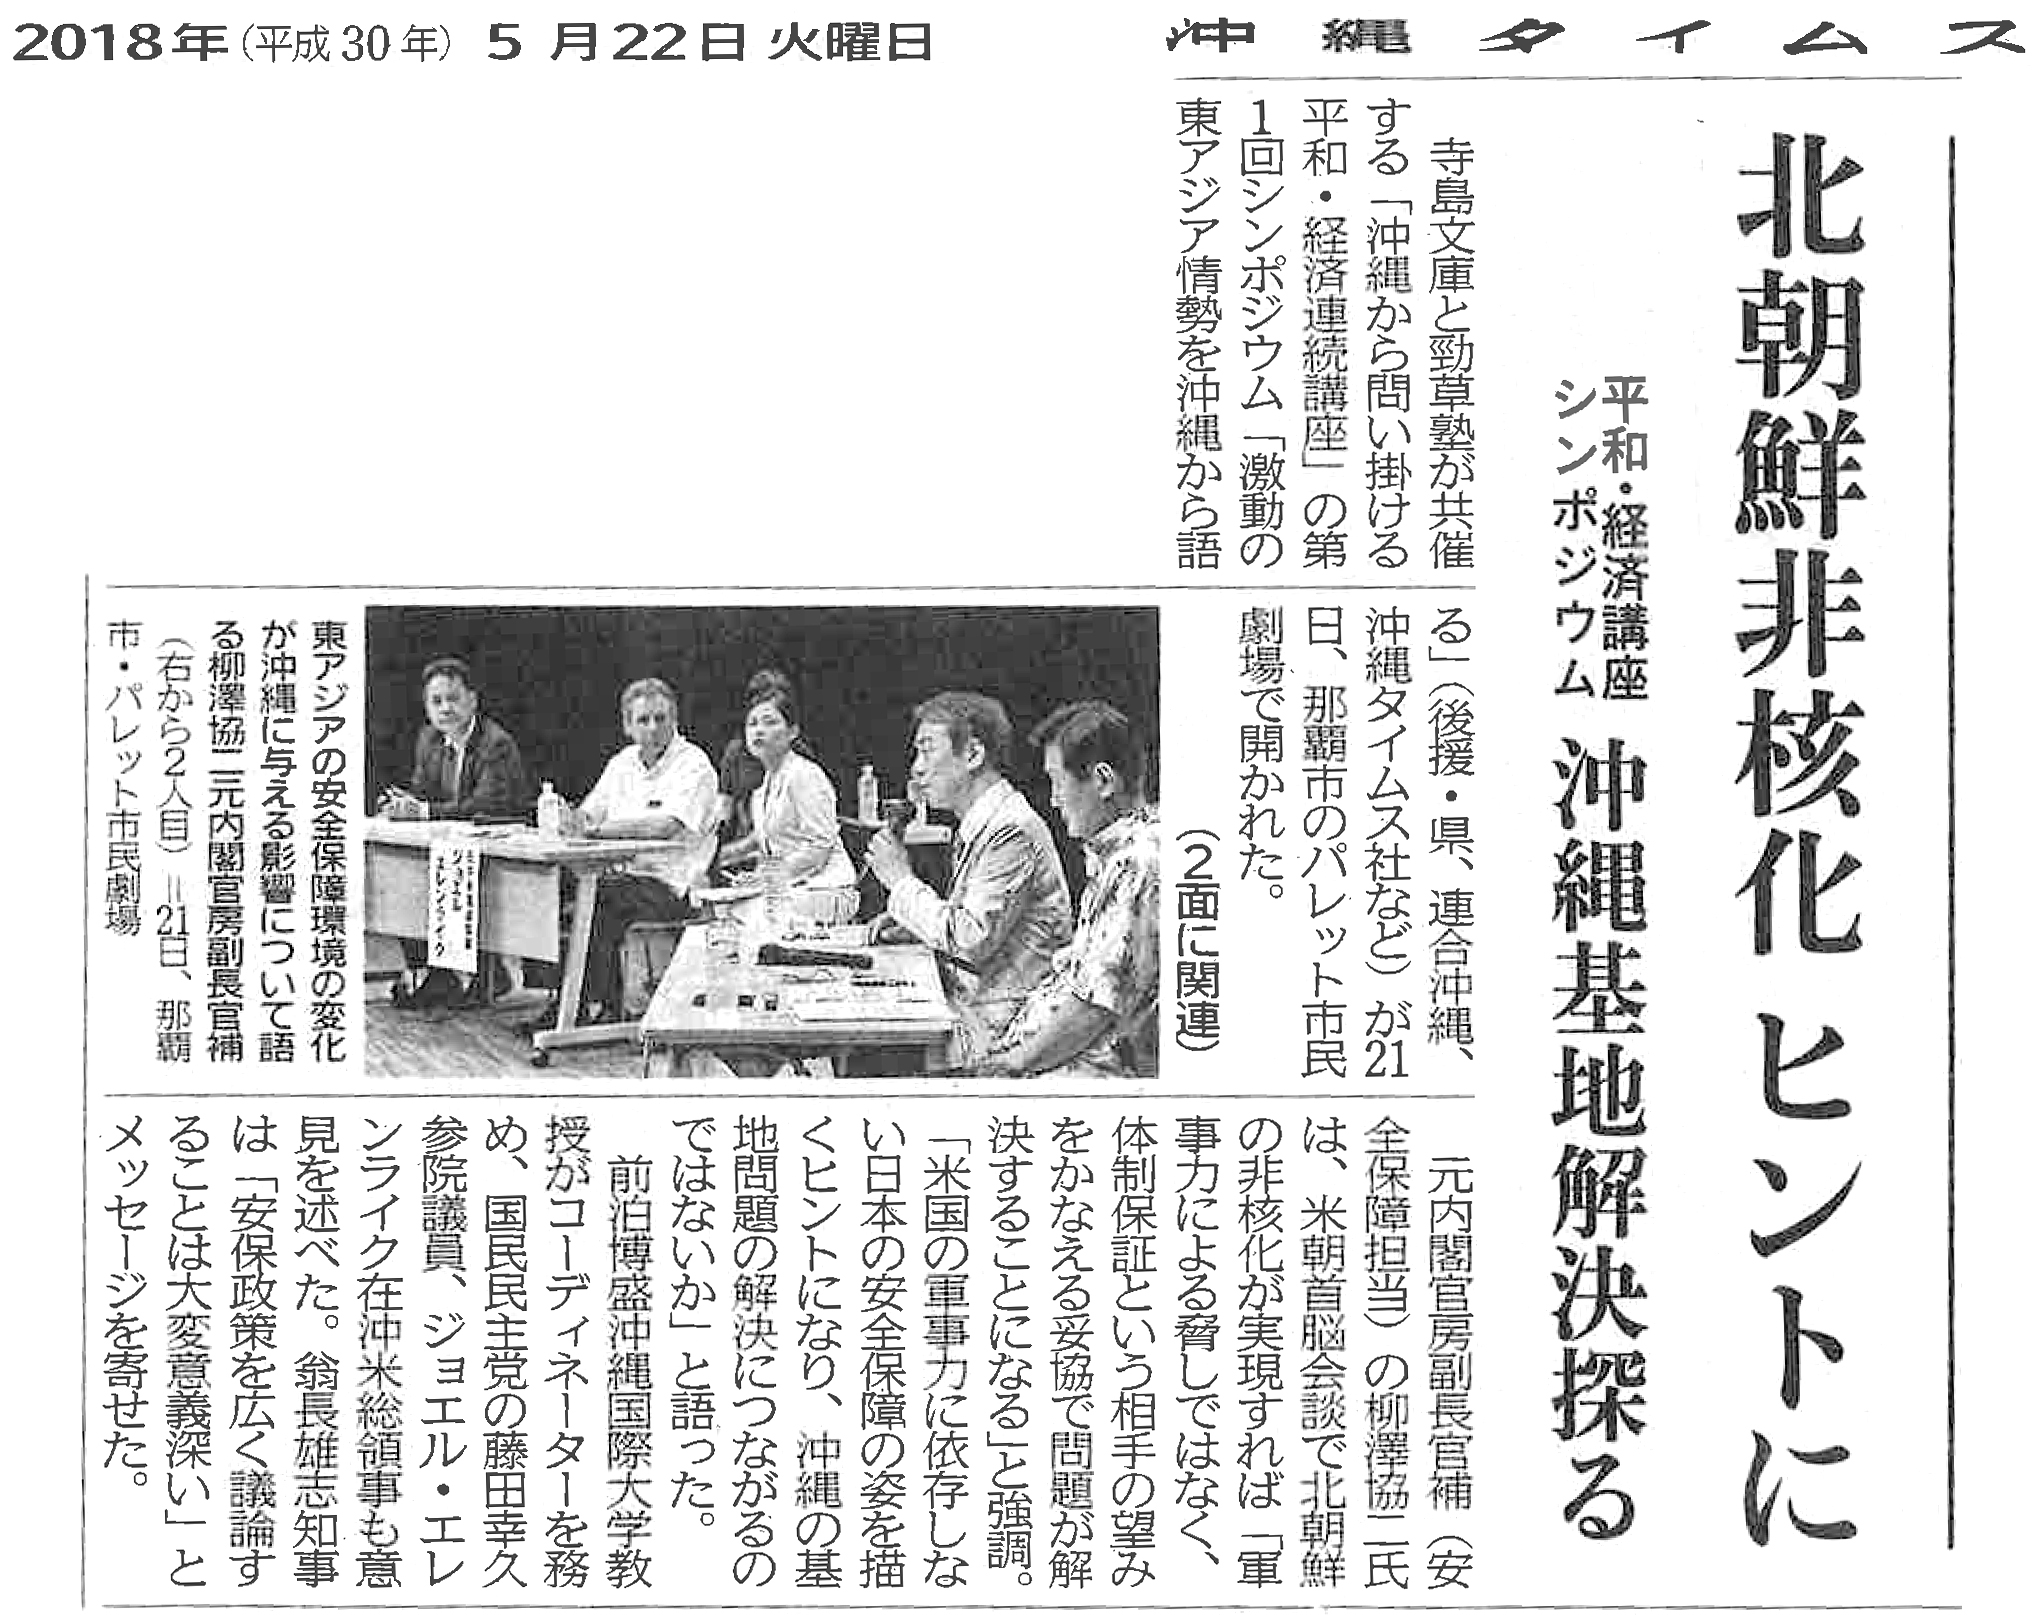 【沖縄タイムス】北朝鮮非核化ヒントに　平和・経済講座シンポジウム